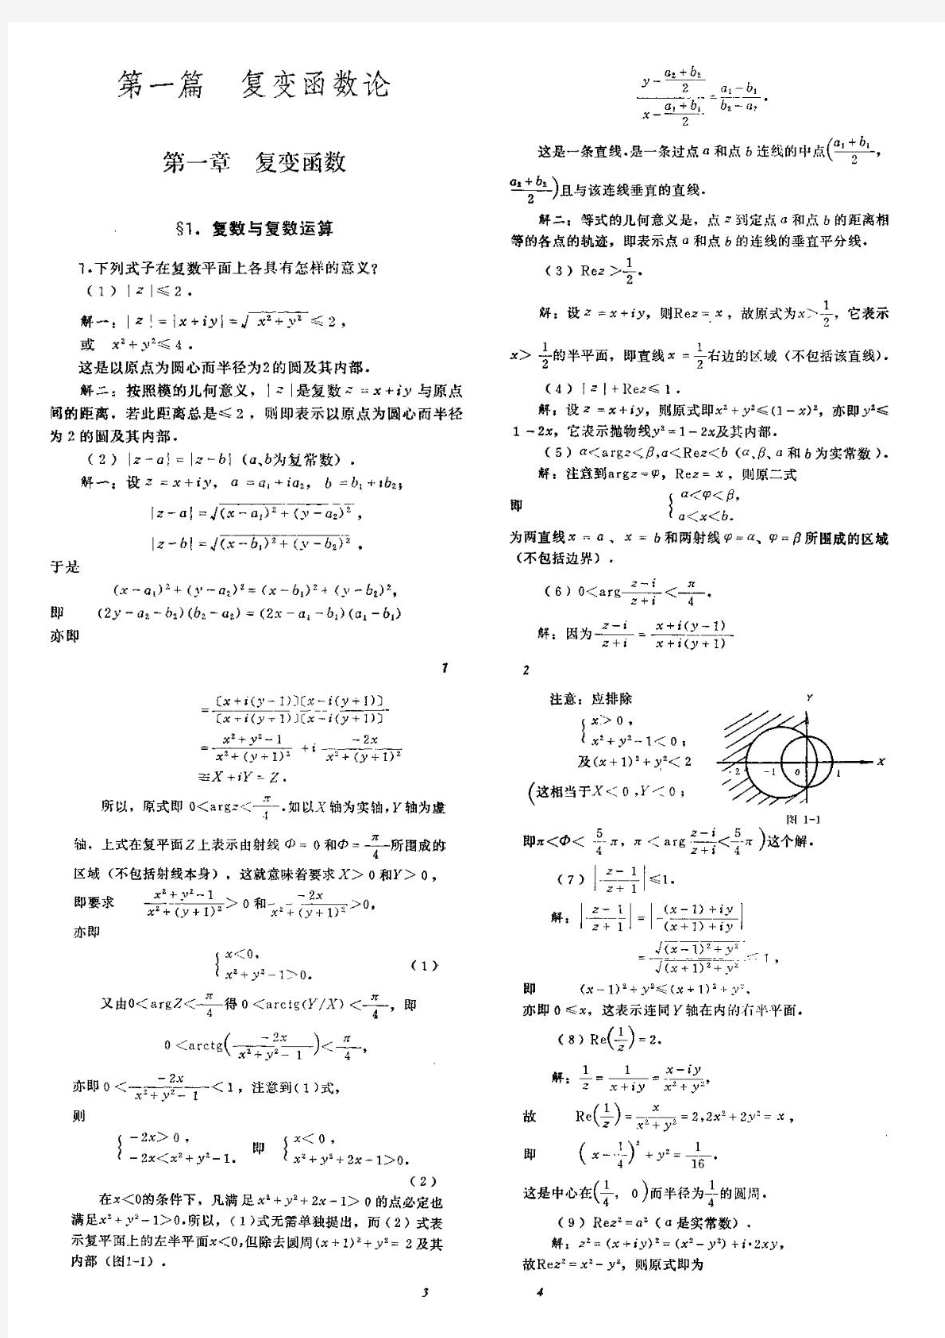 数学物理方法答案(高教第四版)